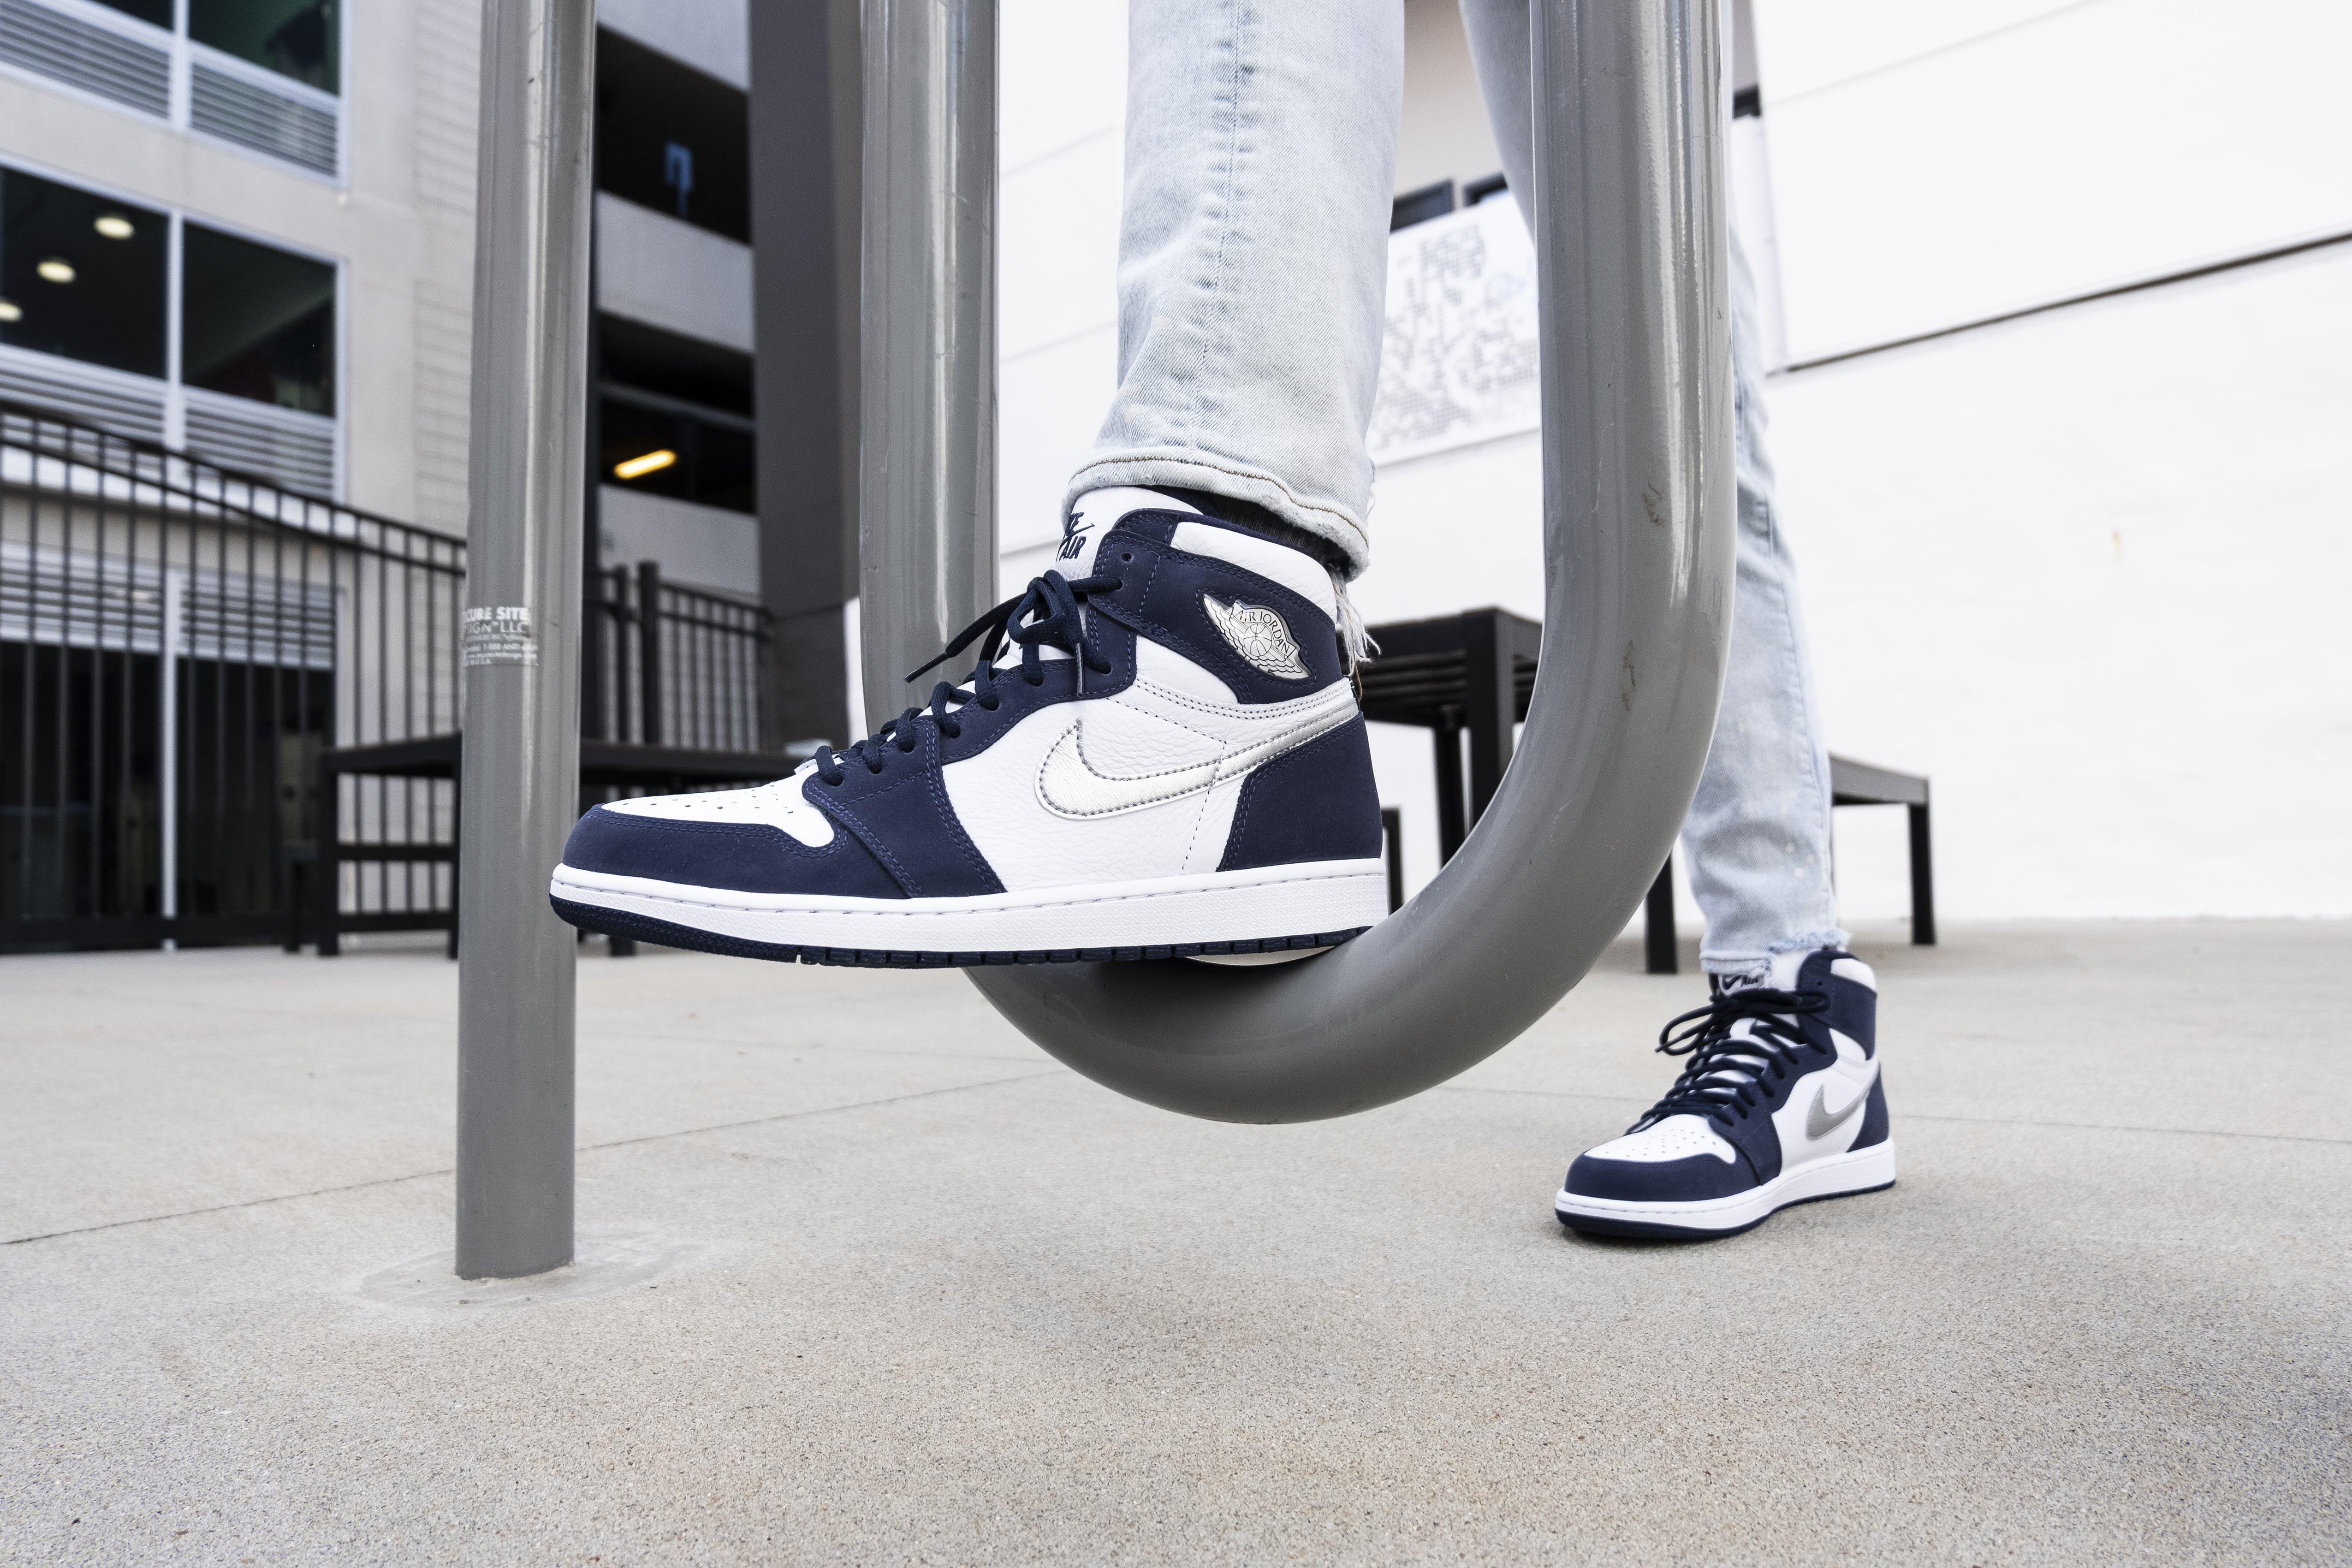 Sneakers Release – Jordan 1 High OG CO.JP “Midnight Navy 